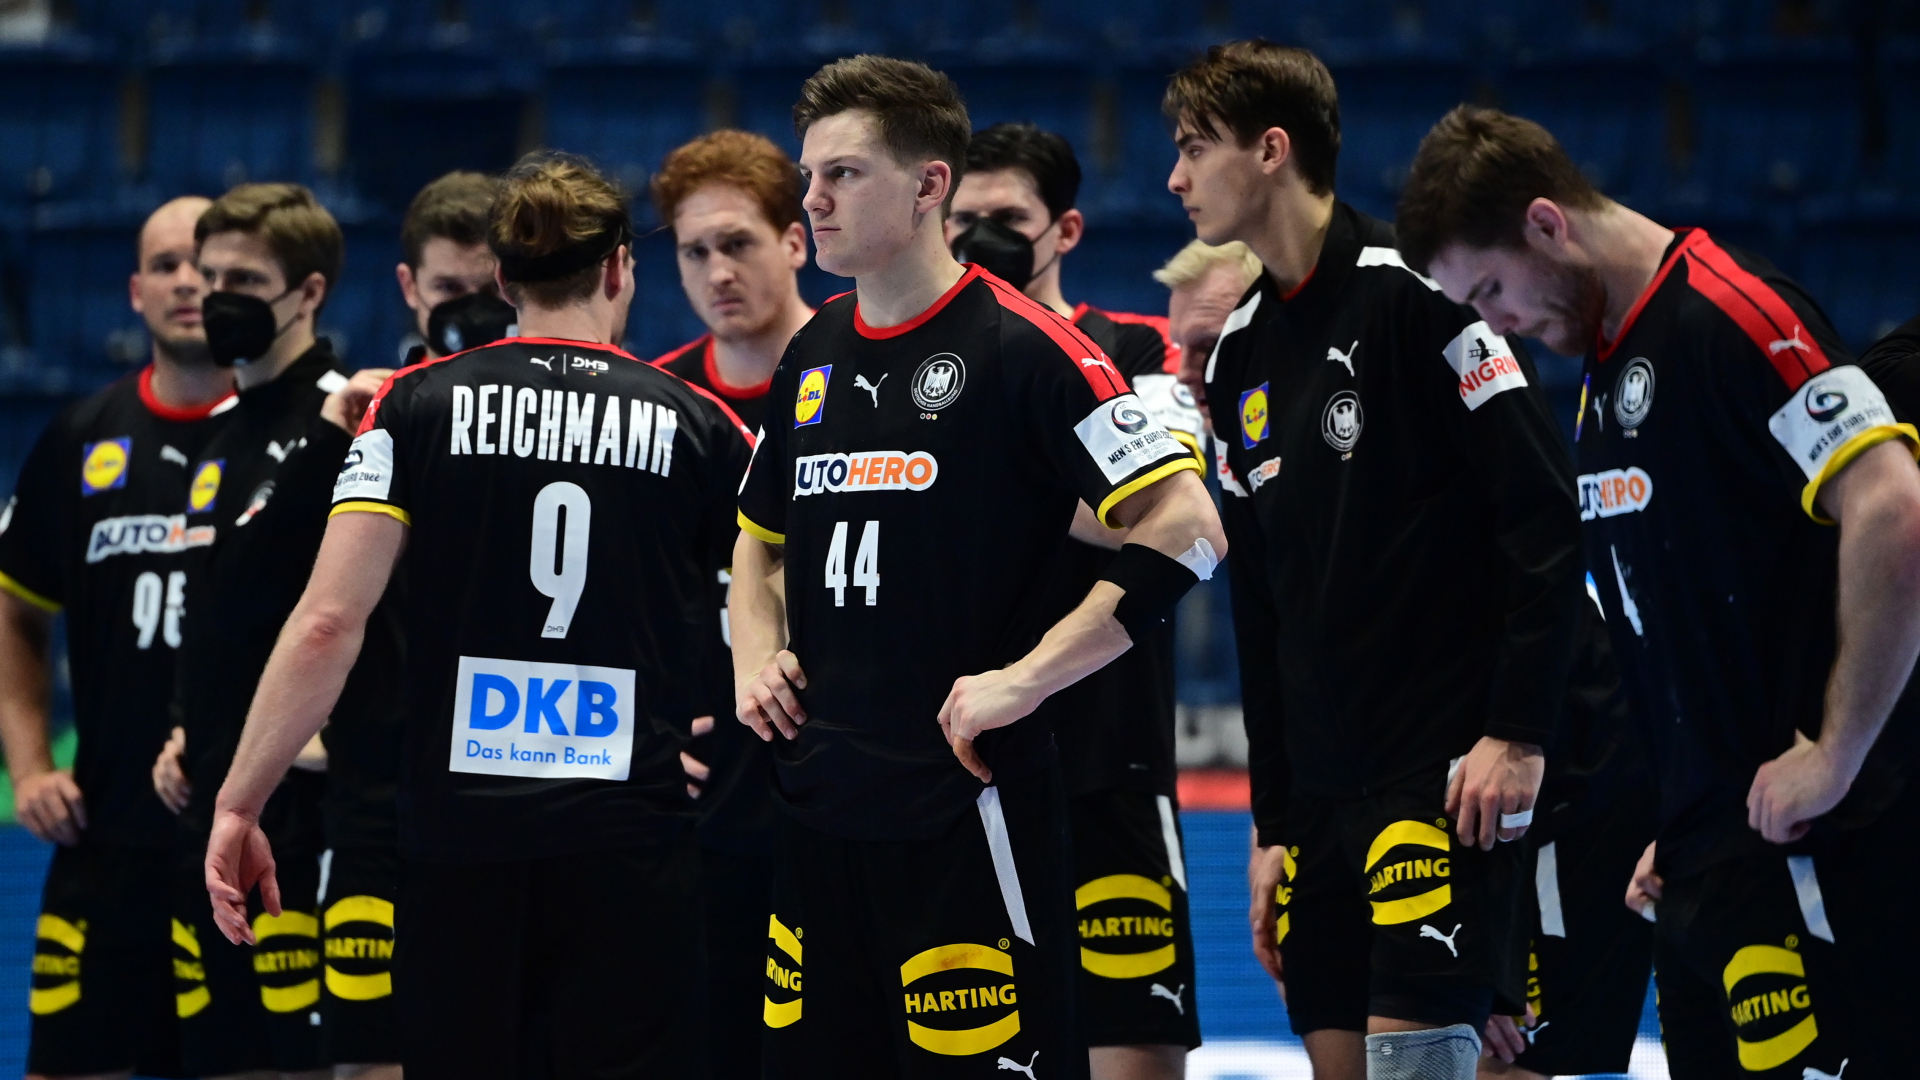 Deutschlands Team um Tobias Reichmann und Christoph Steinert (44) steht bei der Handball-WM nach dem Spiel gegen Norwegen auf dem Platz.